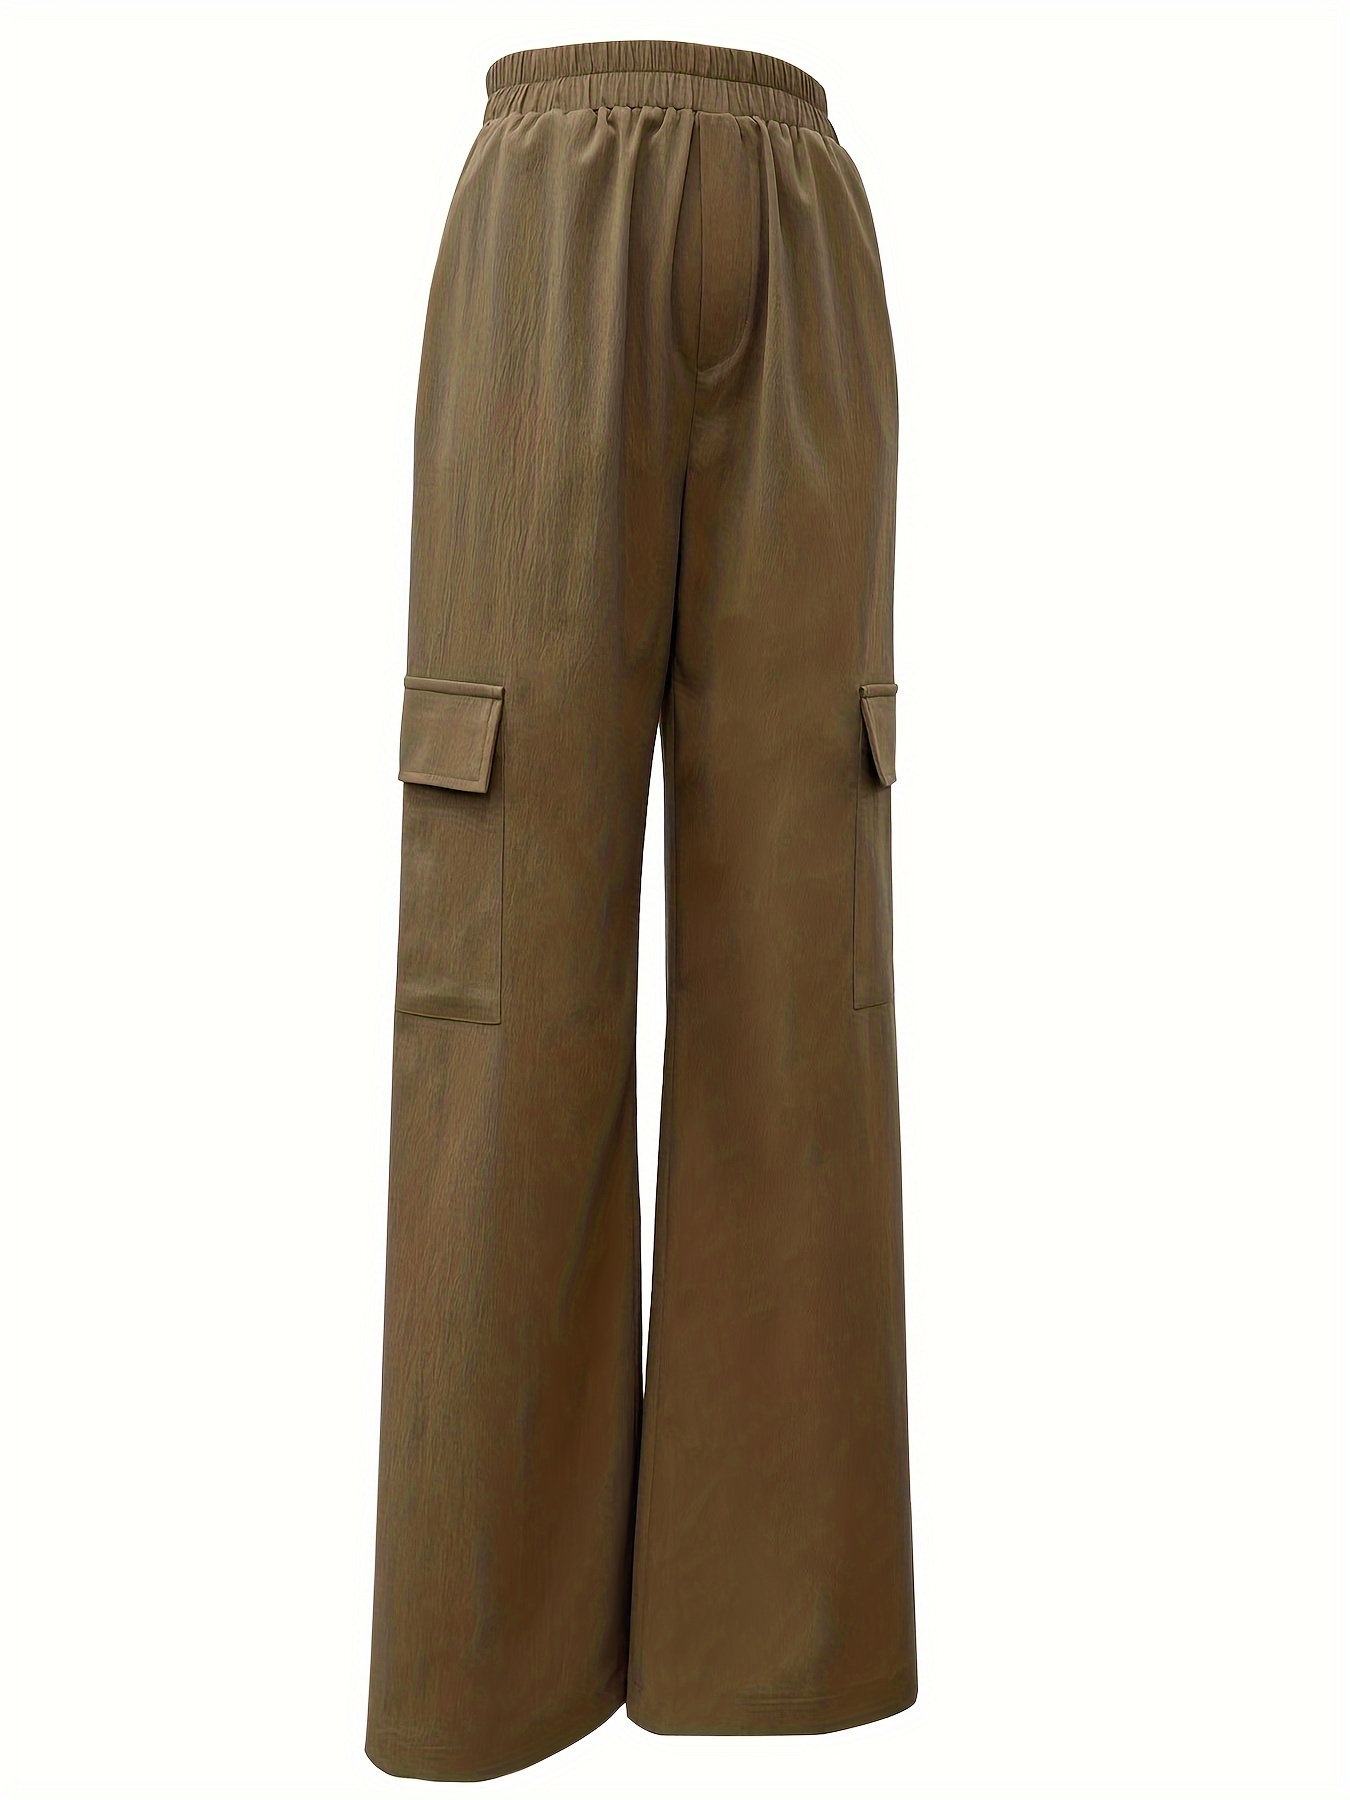 Solid High Waist Pantolon, Rahat Düz Bacaklı Eğimli Cep Pantolonu, Kadın Giyim